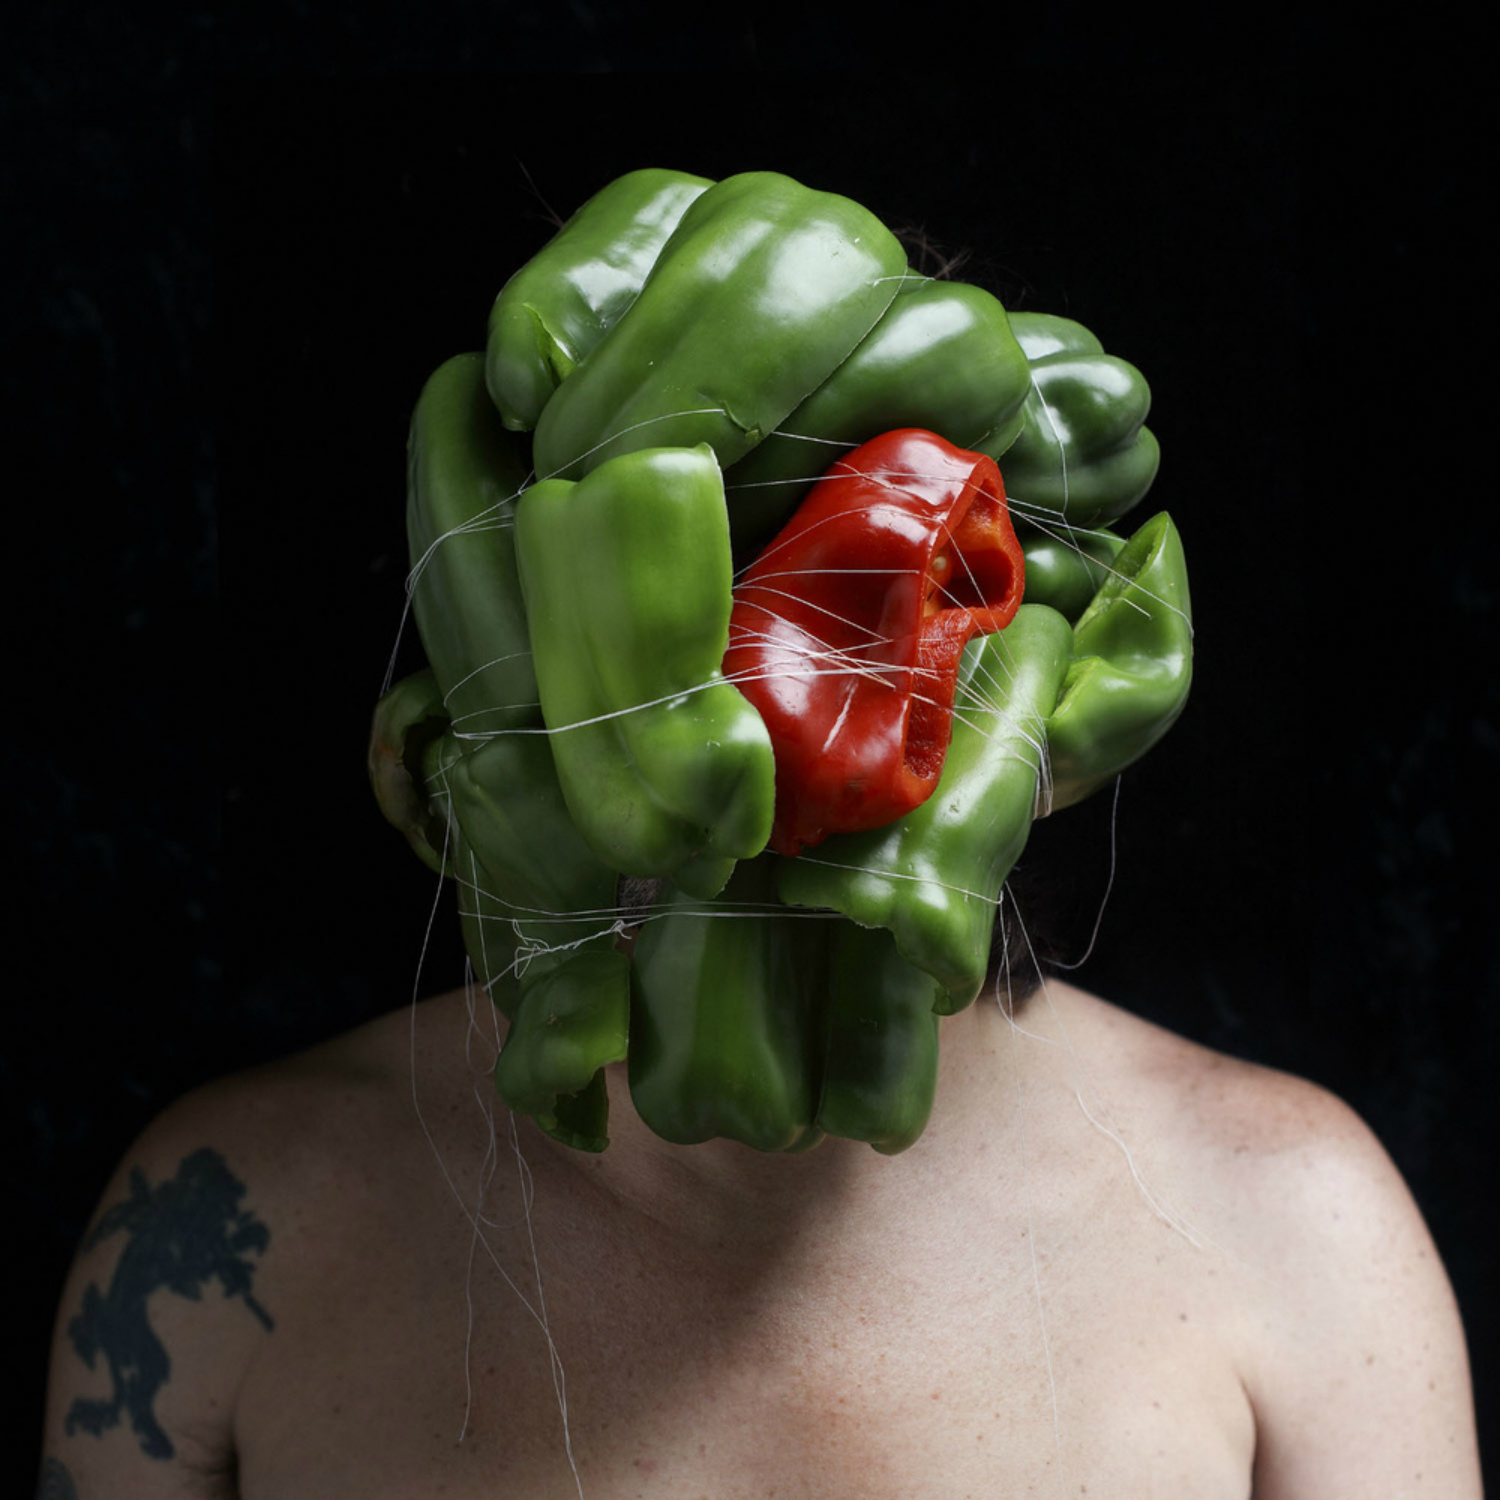 edu monteiro photography portrait gross junk body peppers